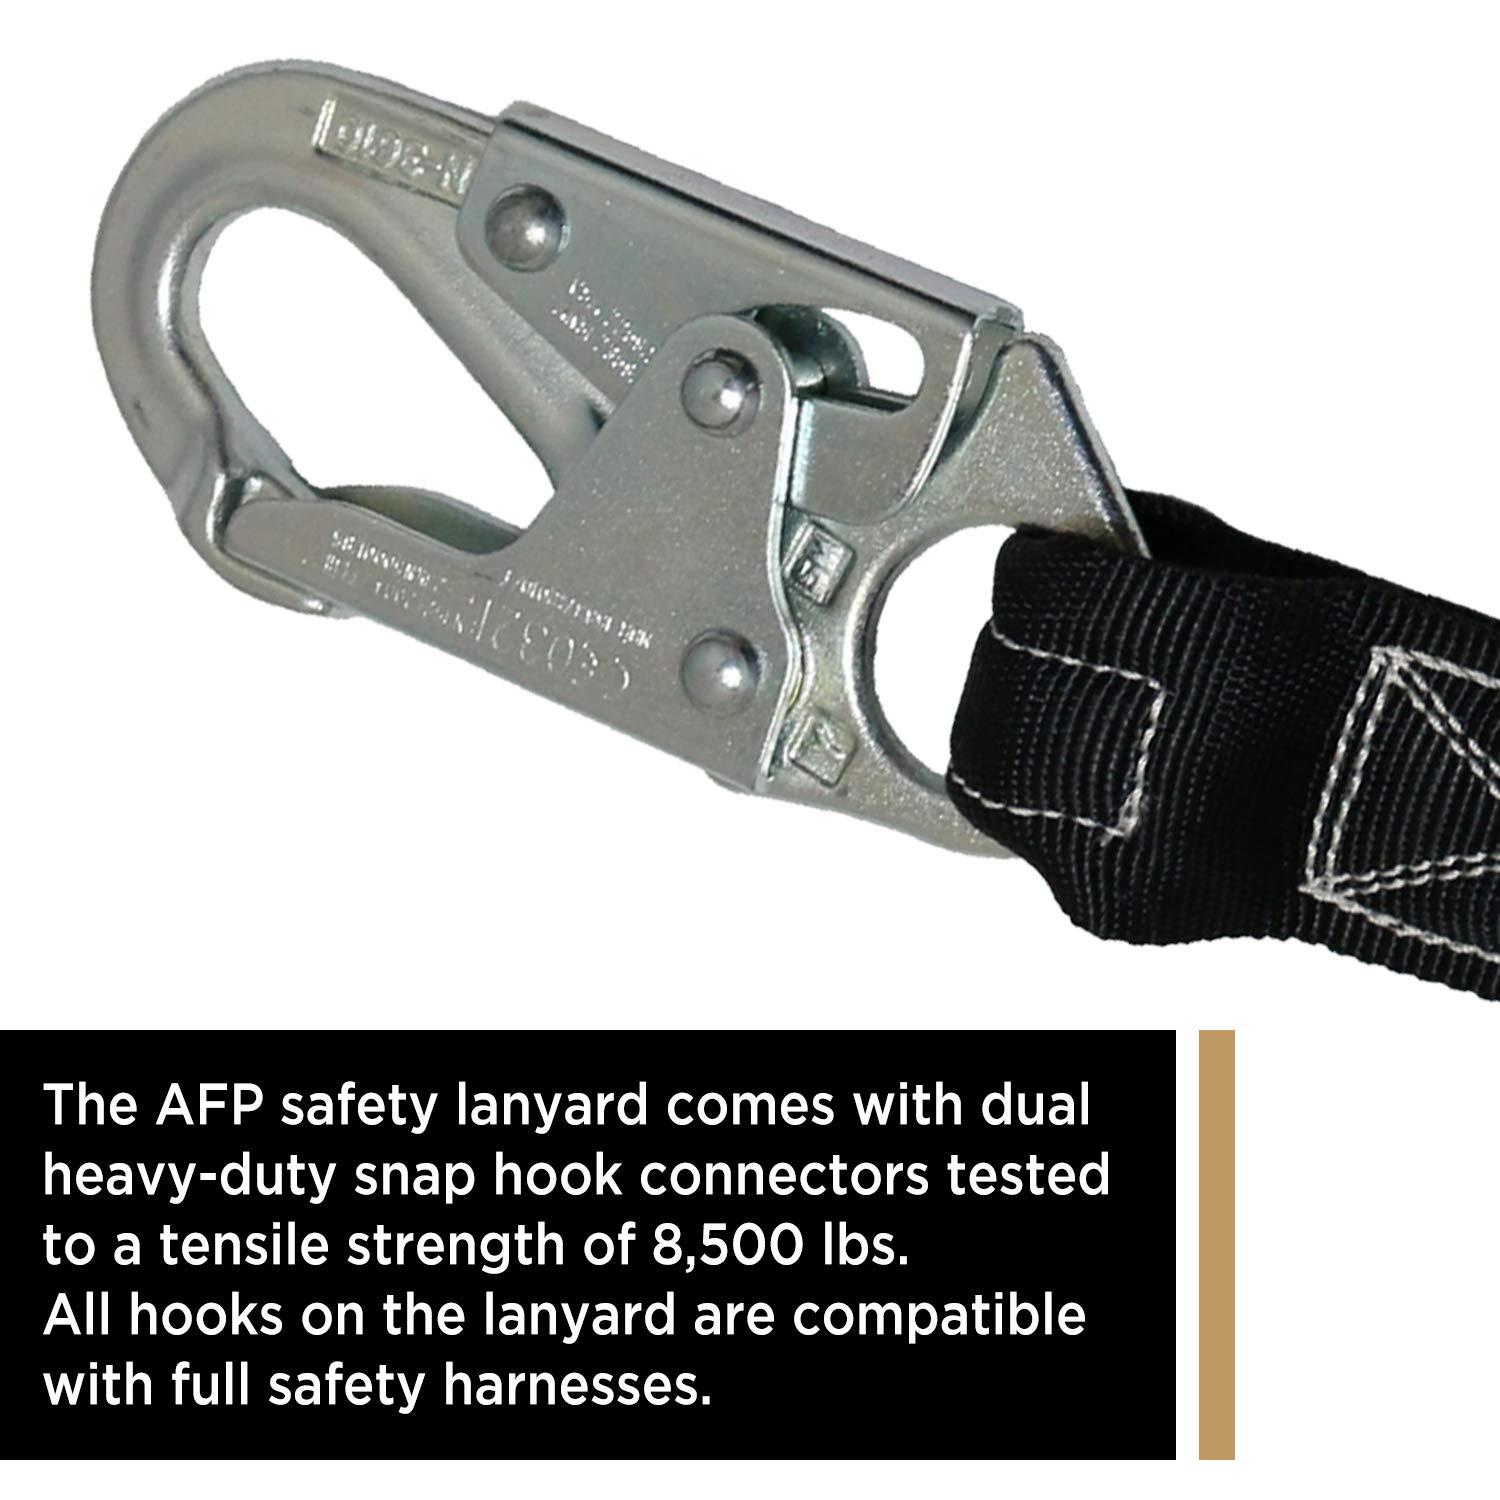 AFP 6 FT Single Leg Internal Shock Absorbing Safety Lanyard with Dual Snap Hooks